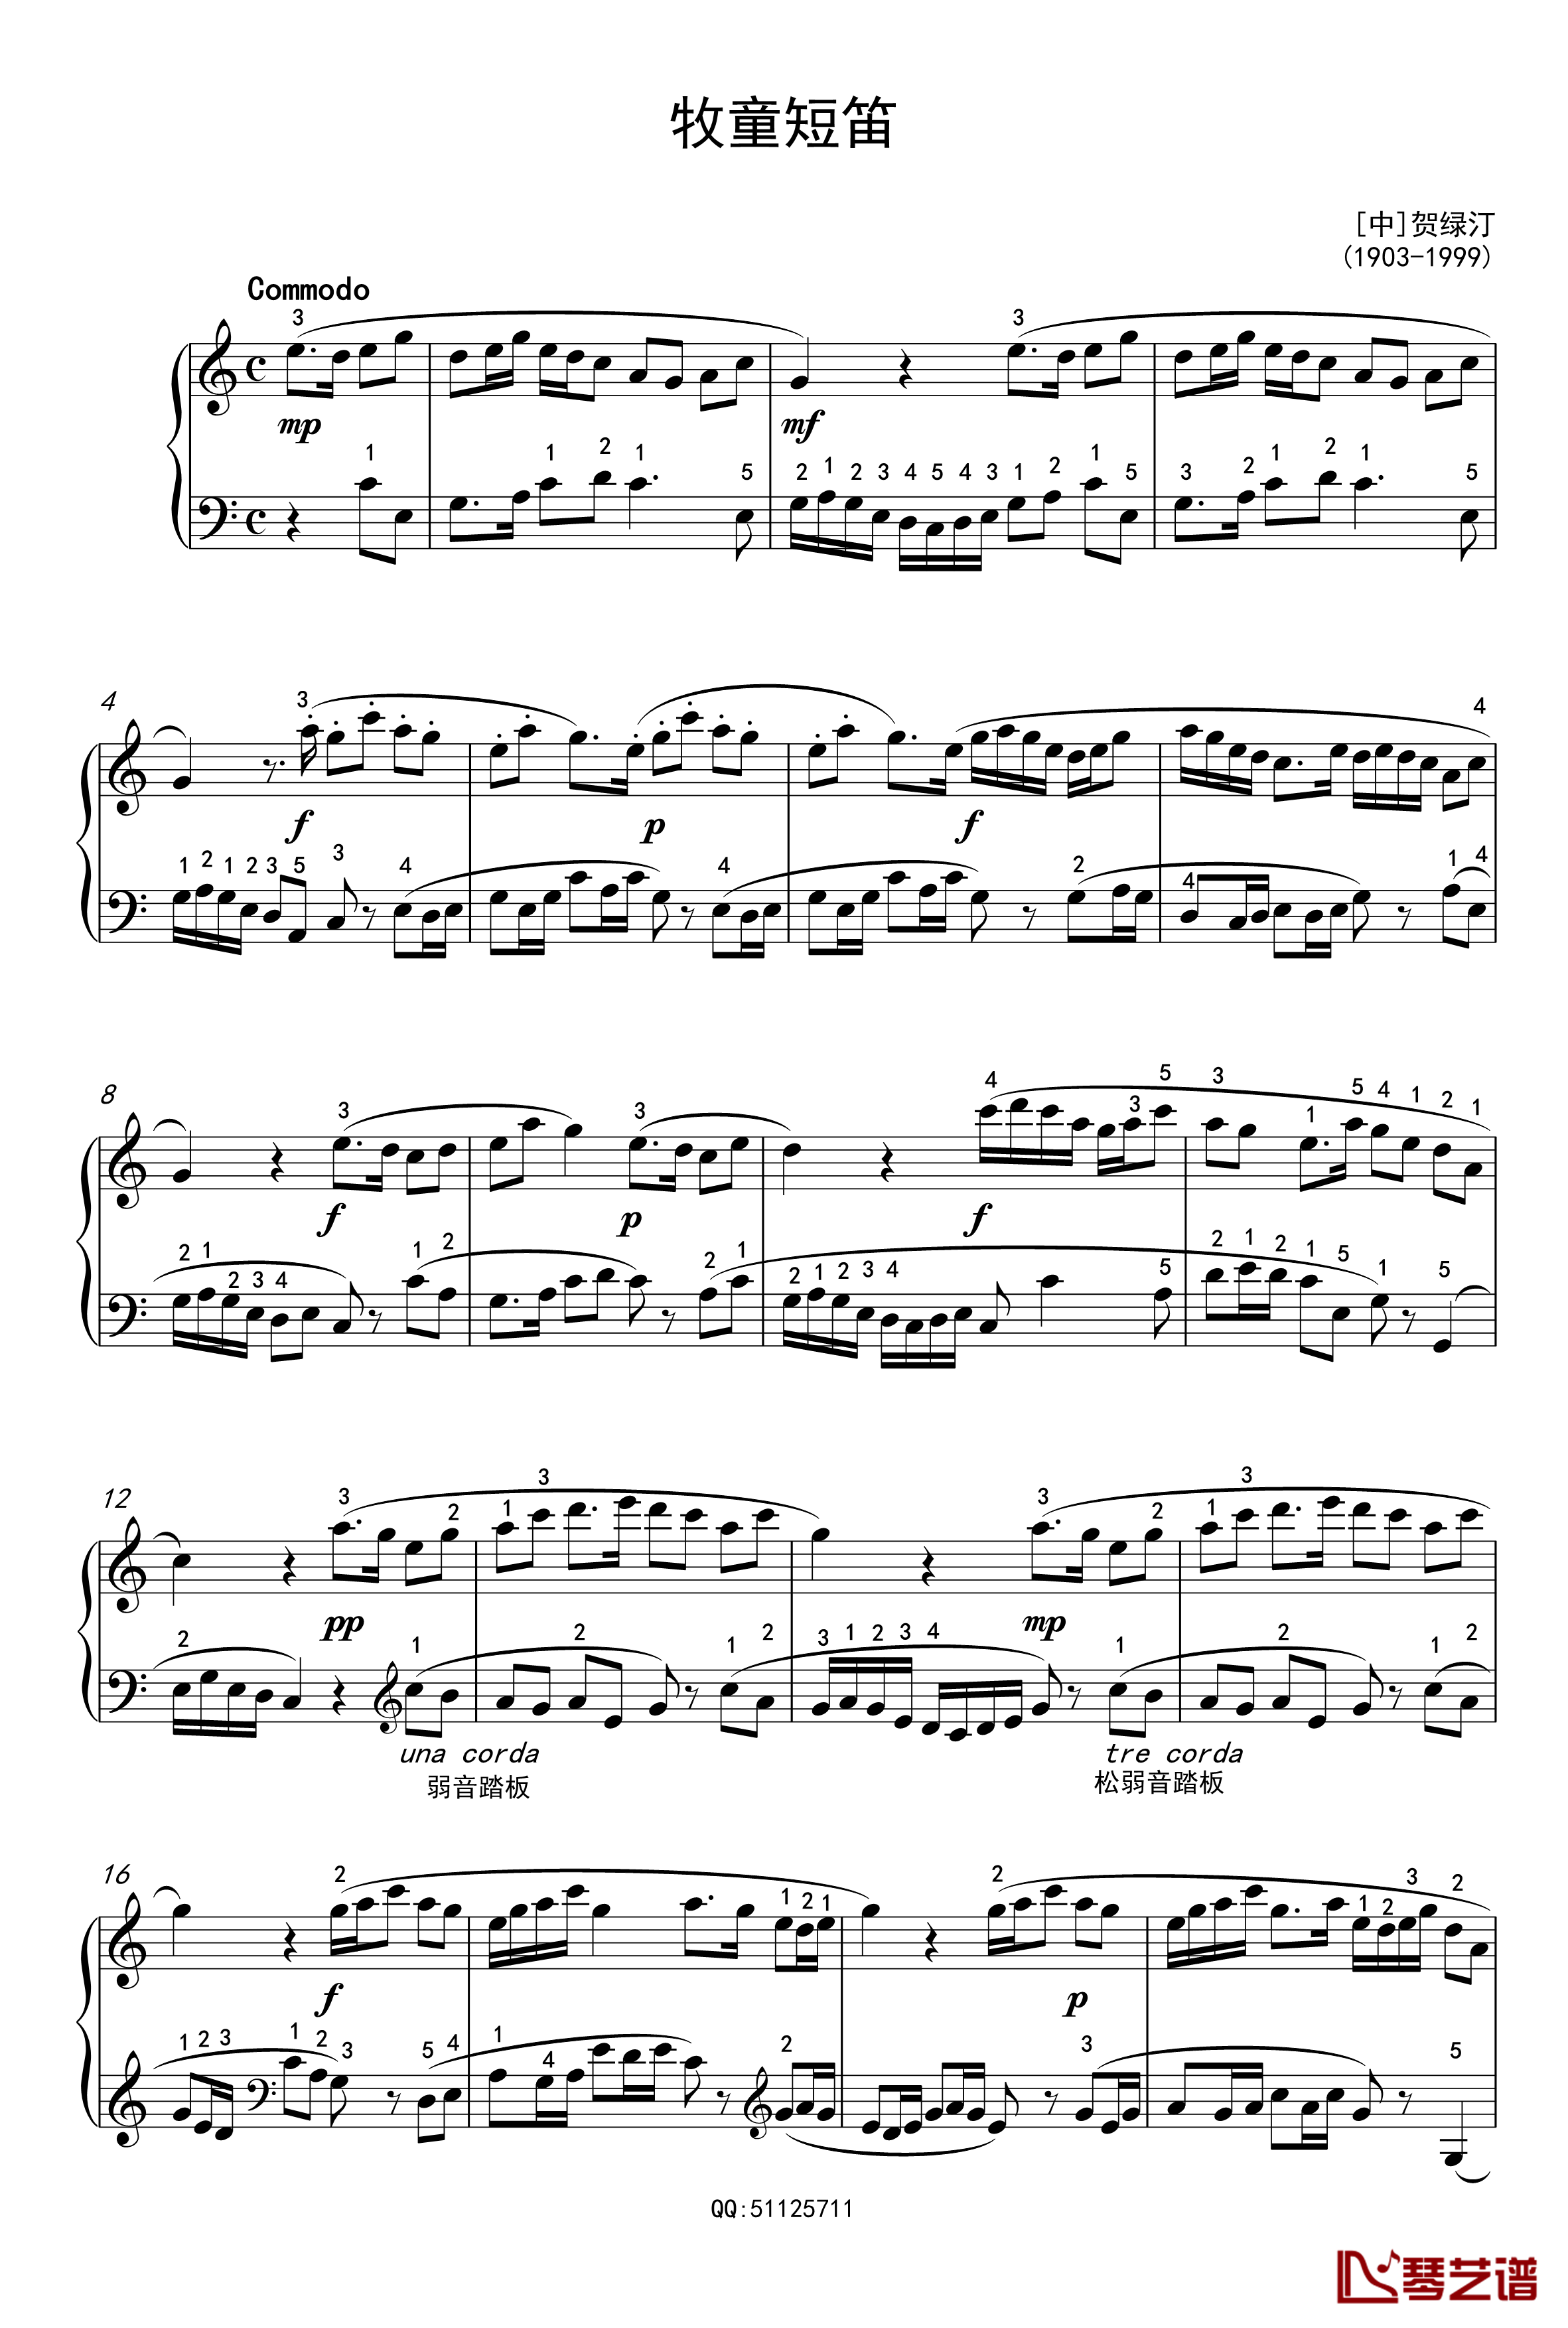 牧童短笛钢琴谱-中国名曲1